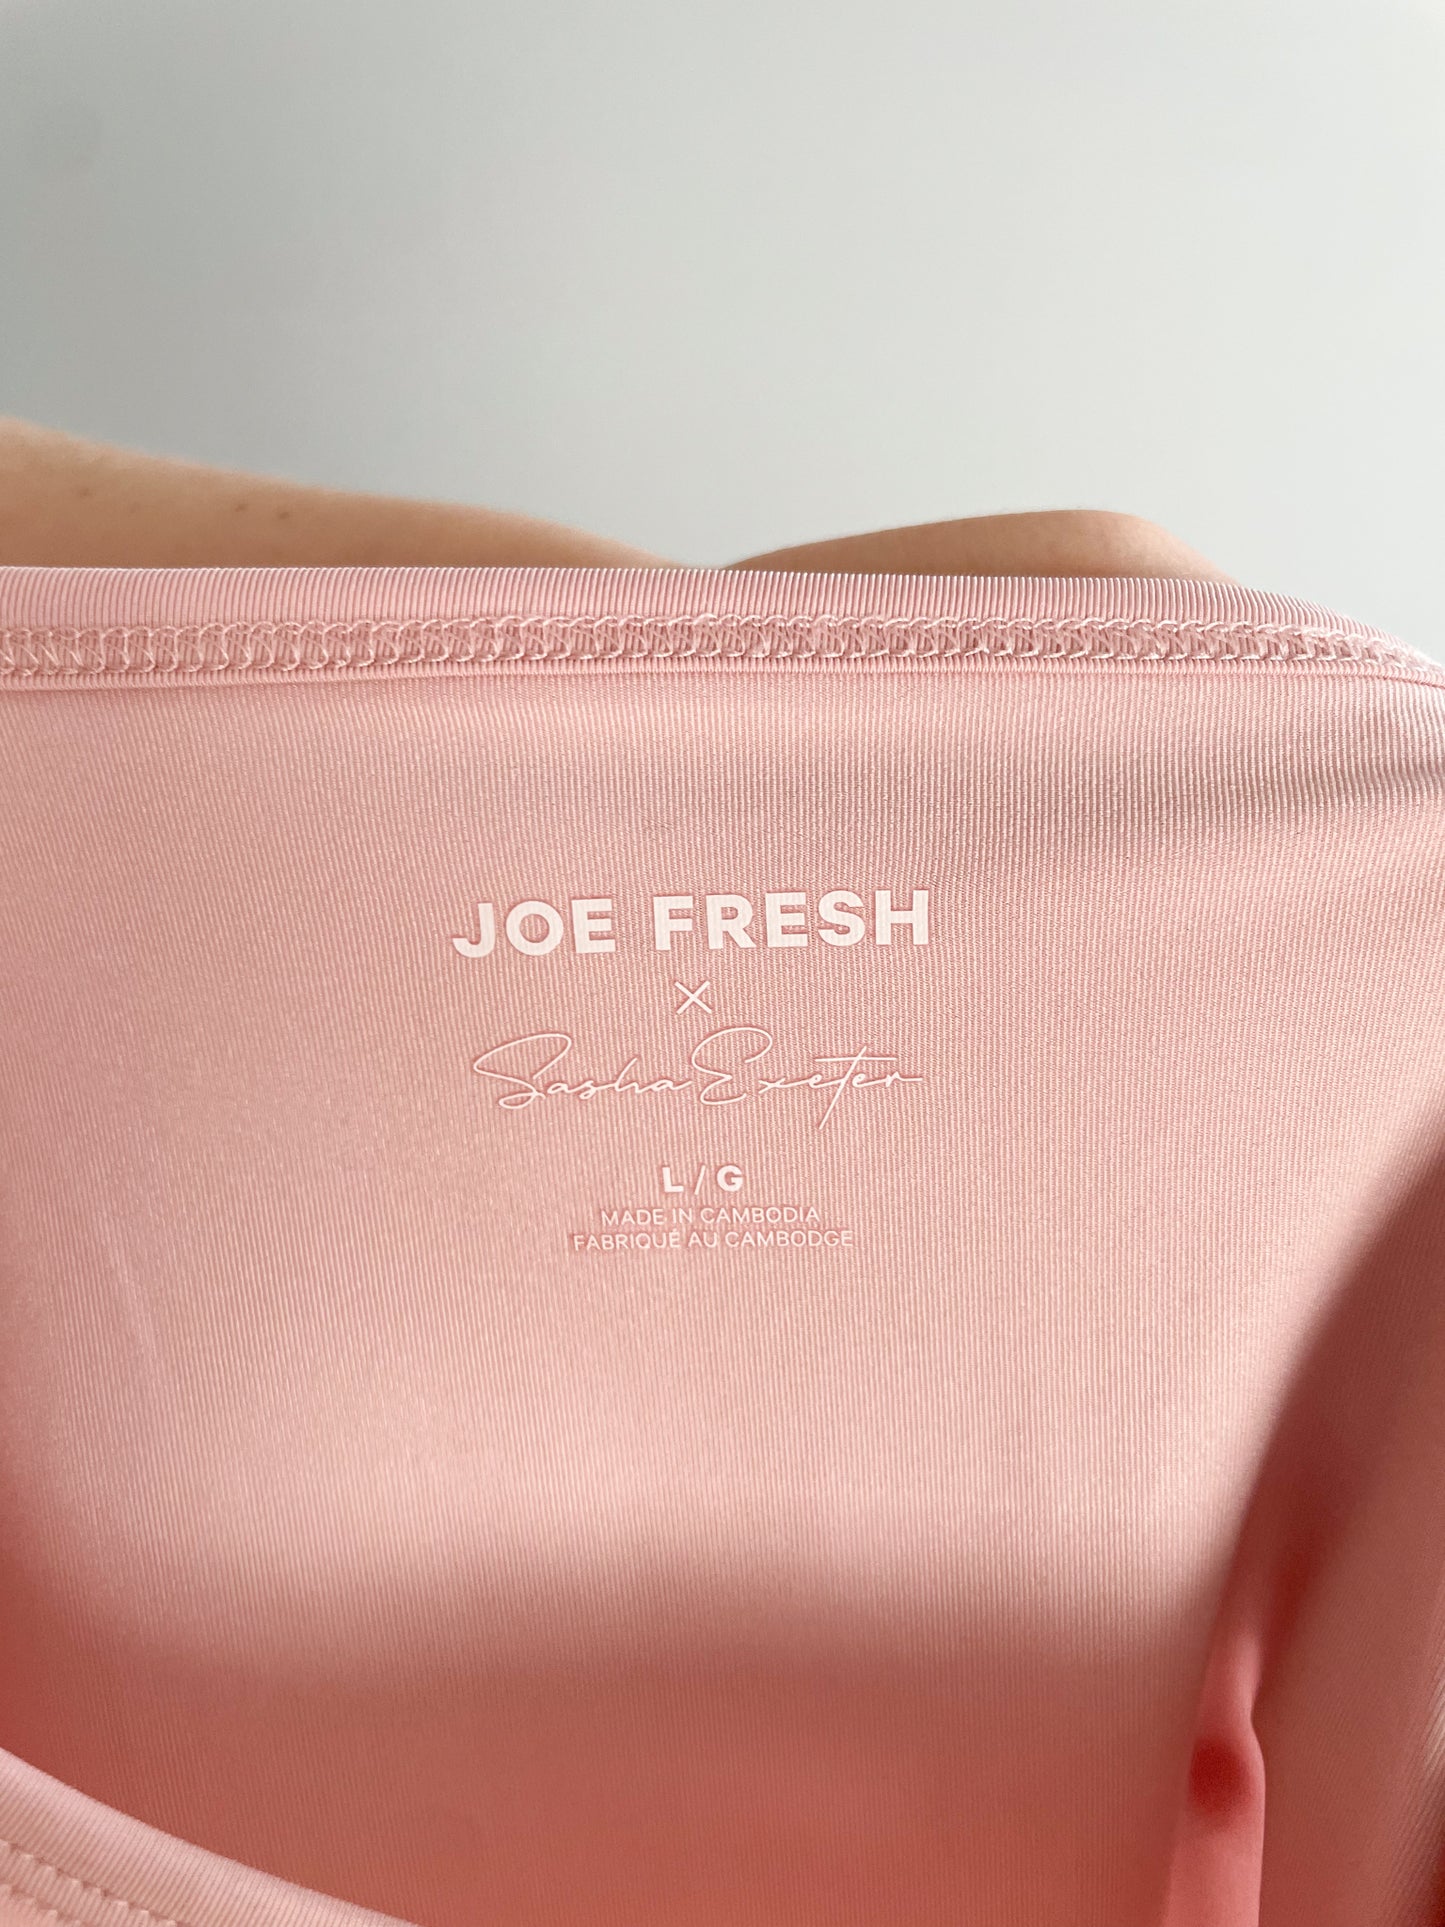 Joe Fresh x Sasha Exeter Blush Pink Cropped Tank Top - Large